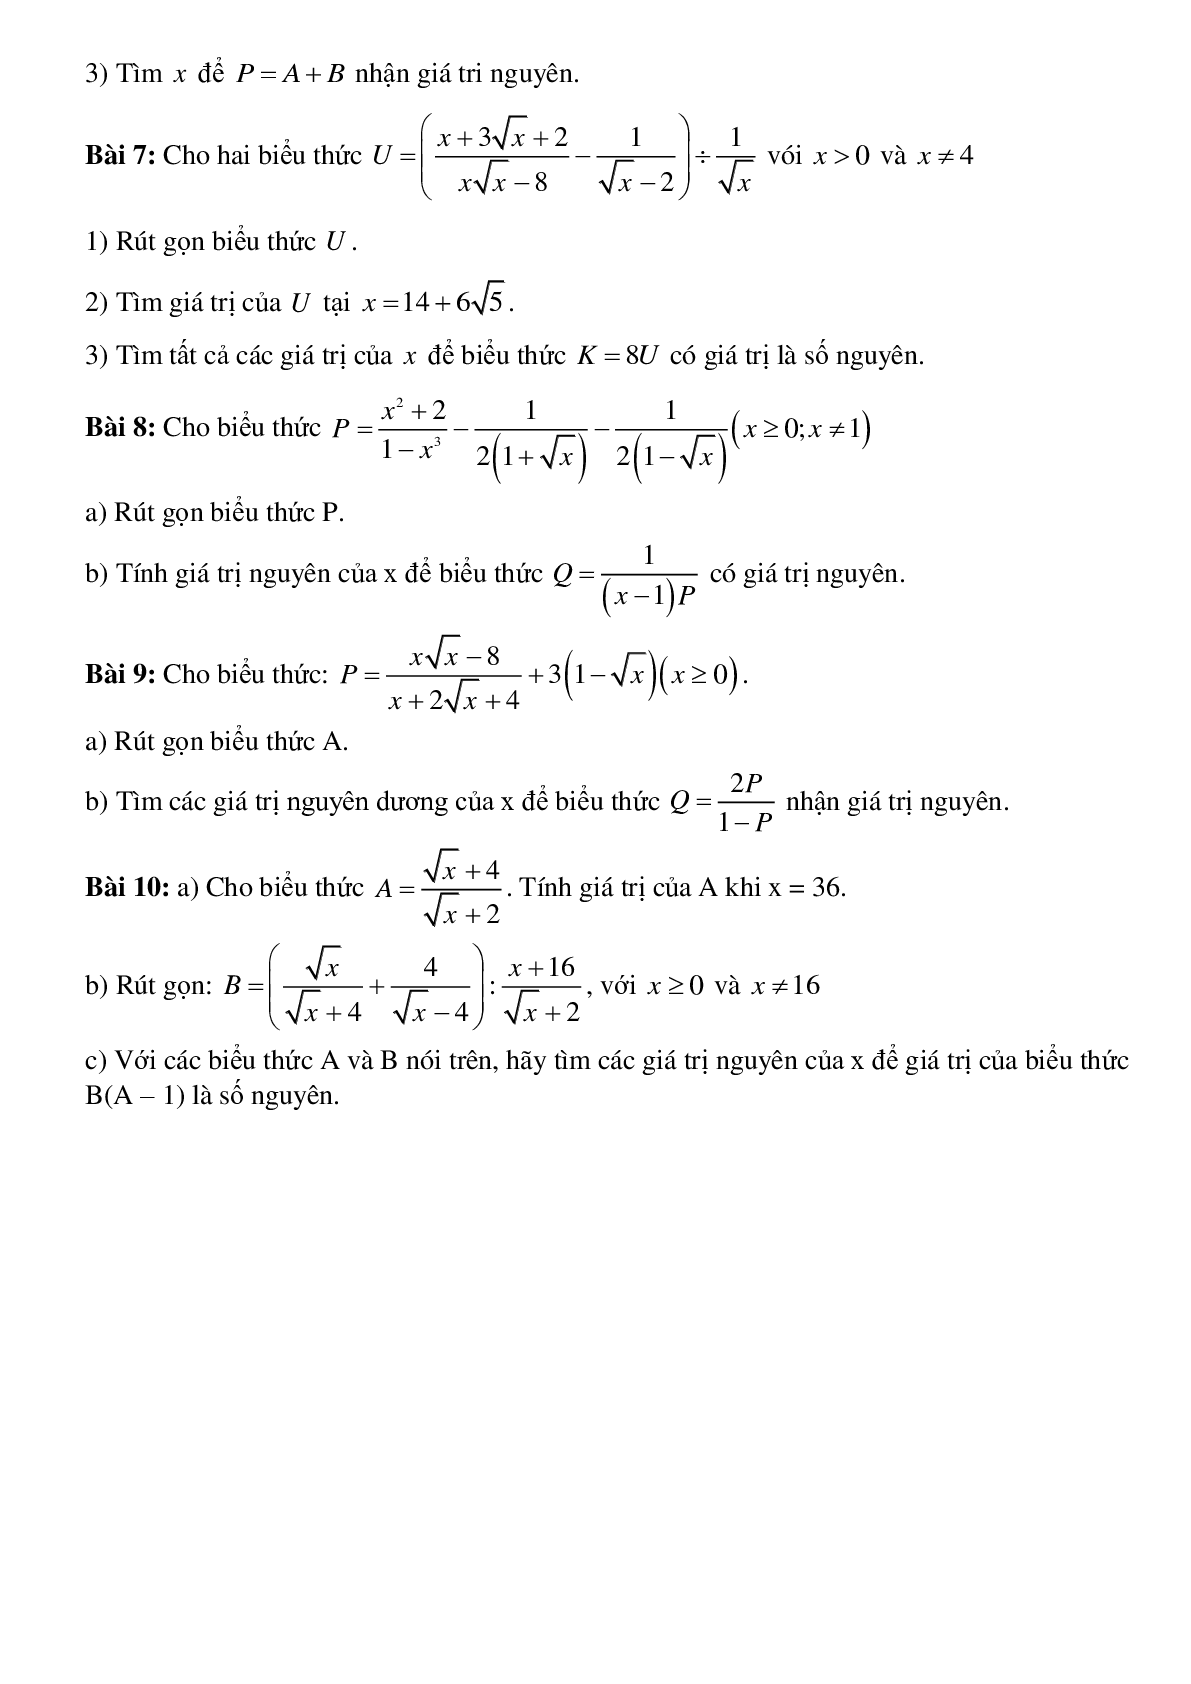 Phương pháp giải tìm x để biểu thức đạt giá trị nguyên chọn lọc (trang 6)